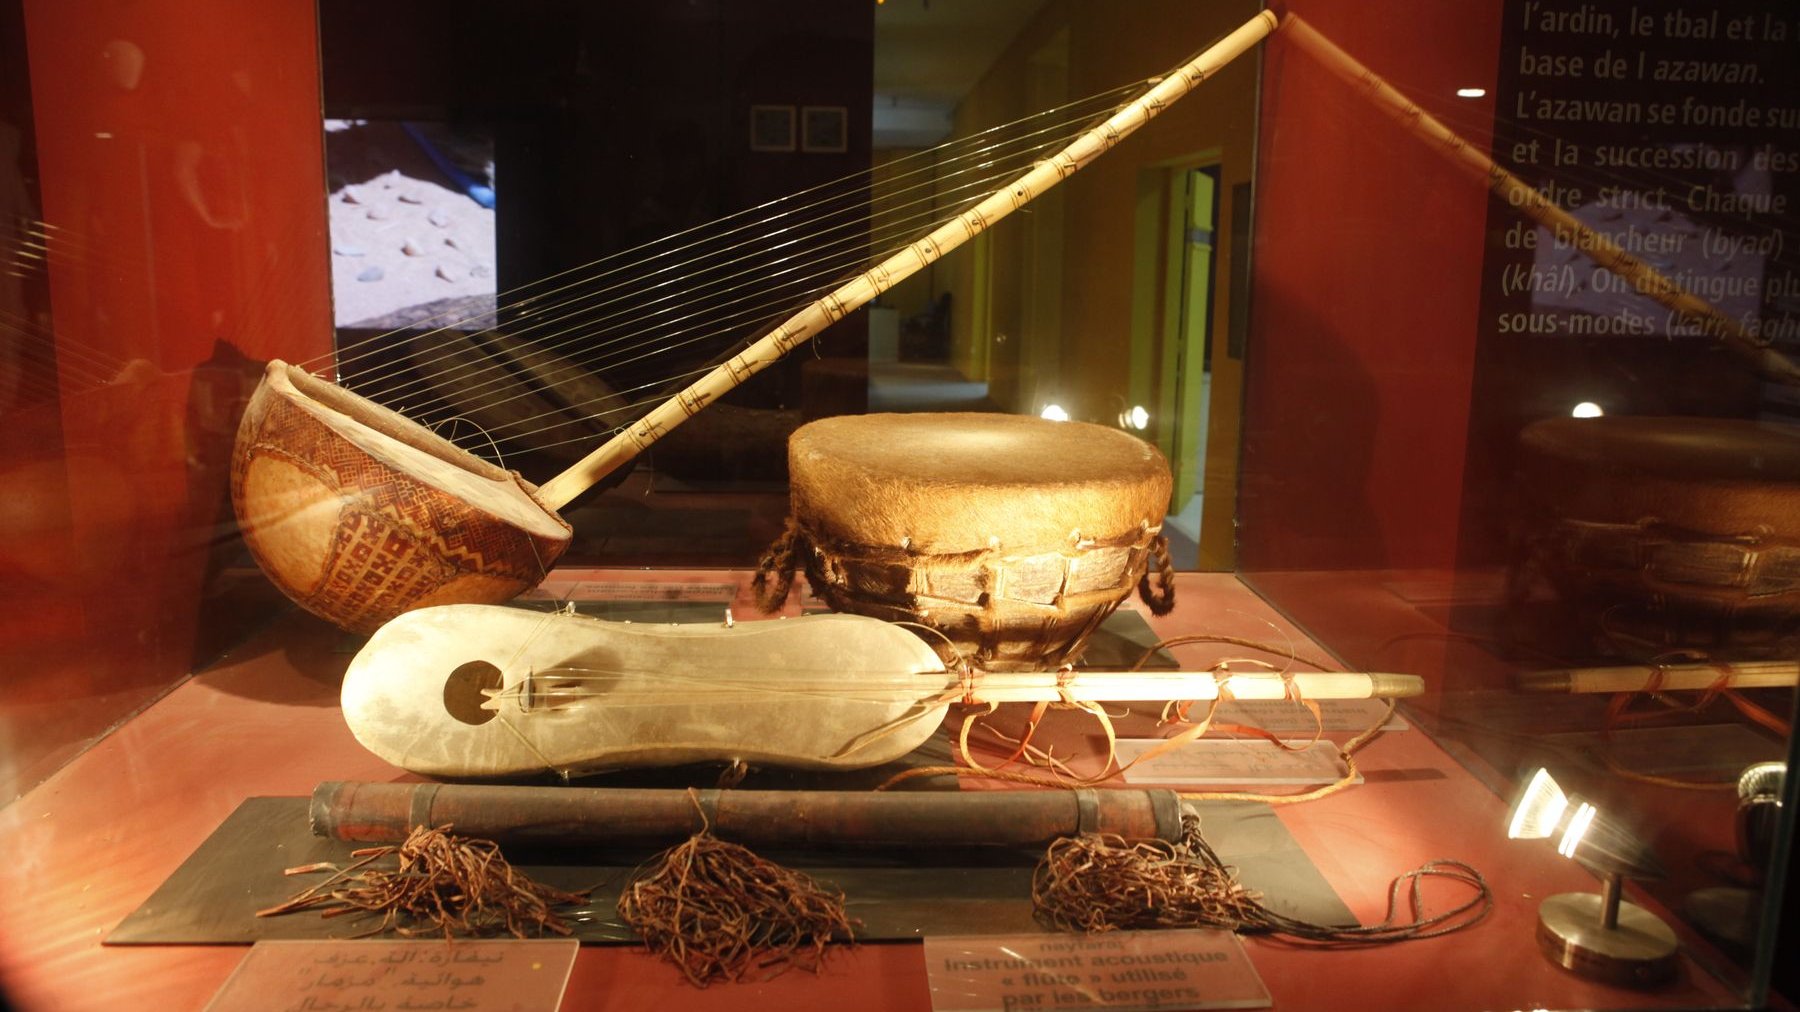 Des instruments de musique traditionnels faisait partie de cette belle exposition et semblaient faire danser les lumières. 
